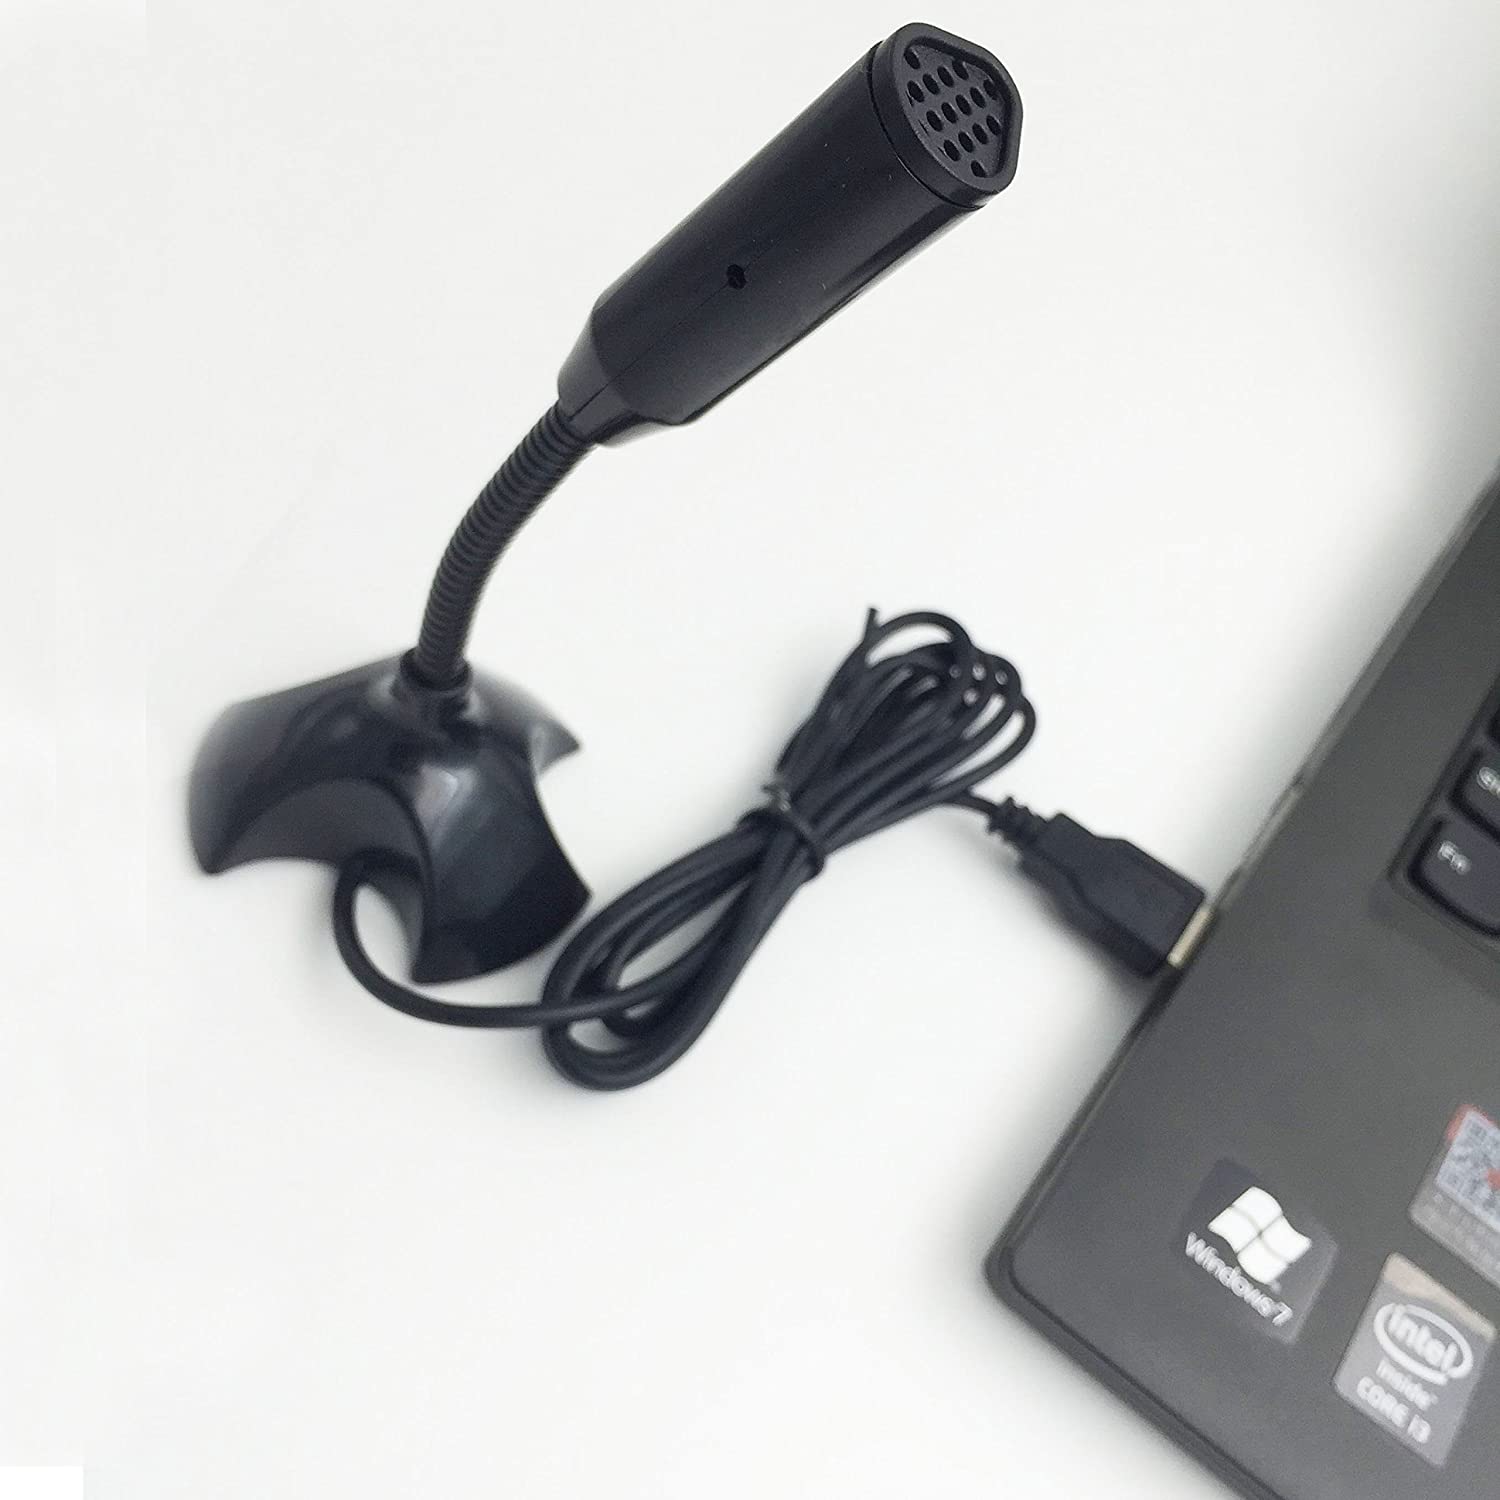 Microphone Cắm Cổng USB Cho Máy Tính M-306